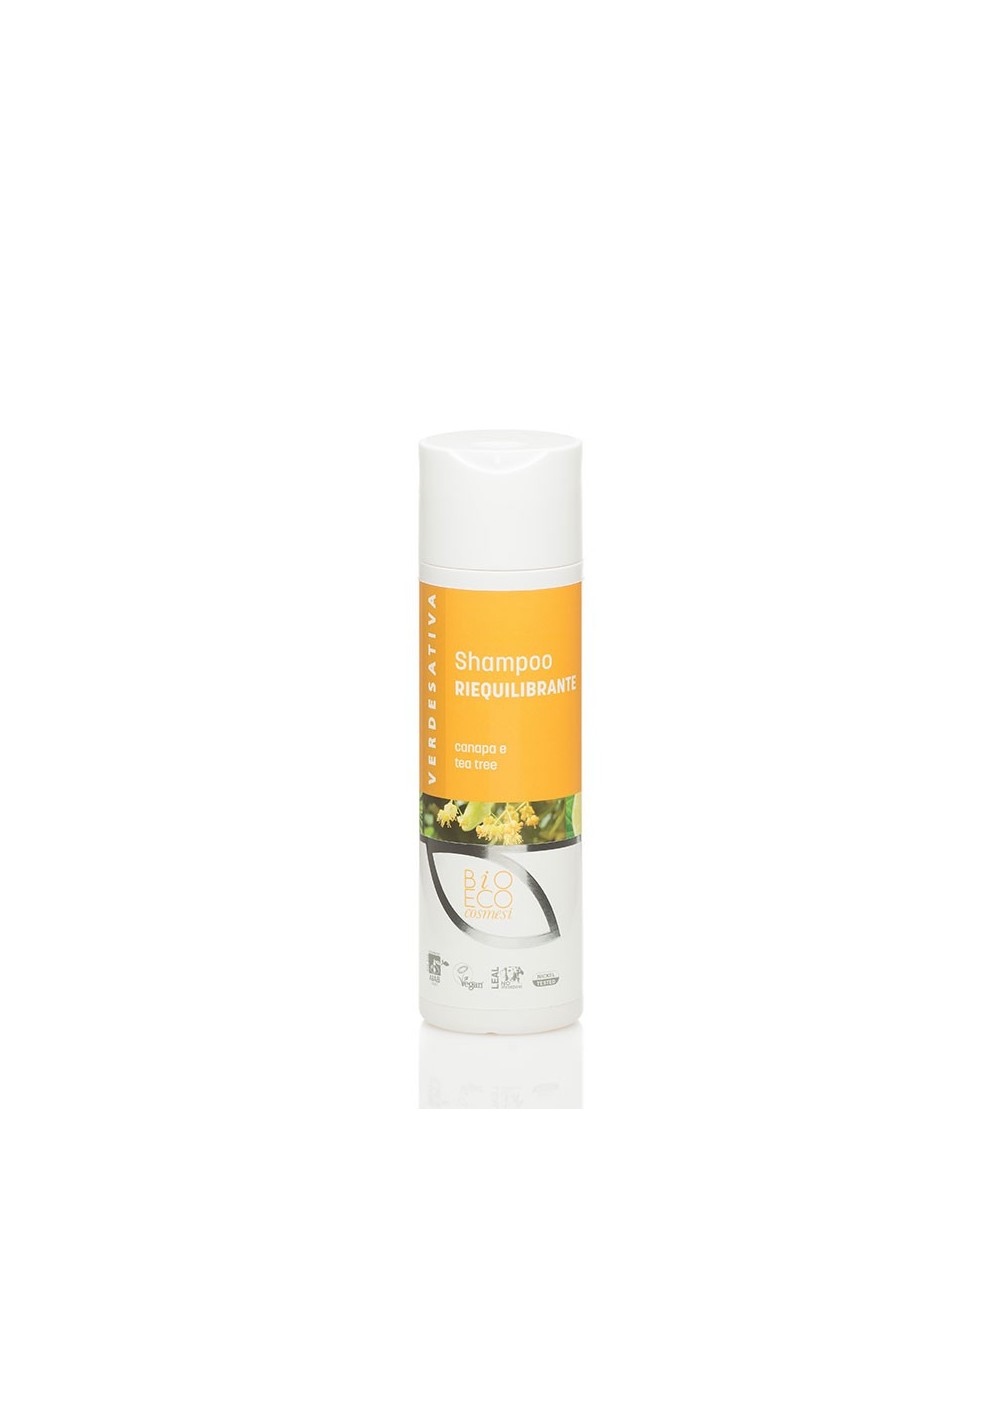 Shampoo Riequilibrante Capelli Grassi ml 200 - Verdesativa Bagno Doccia